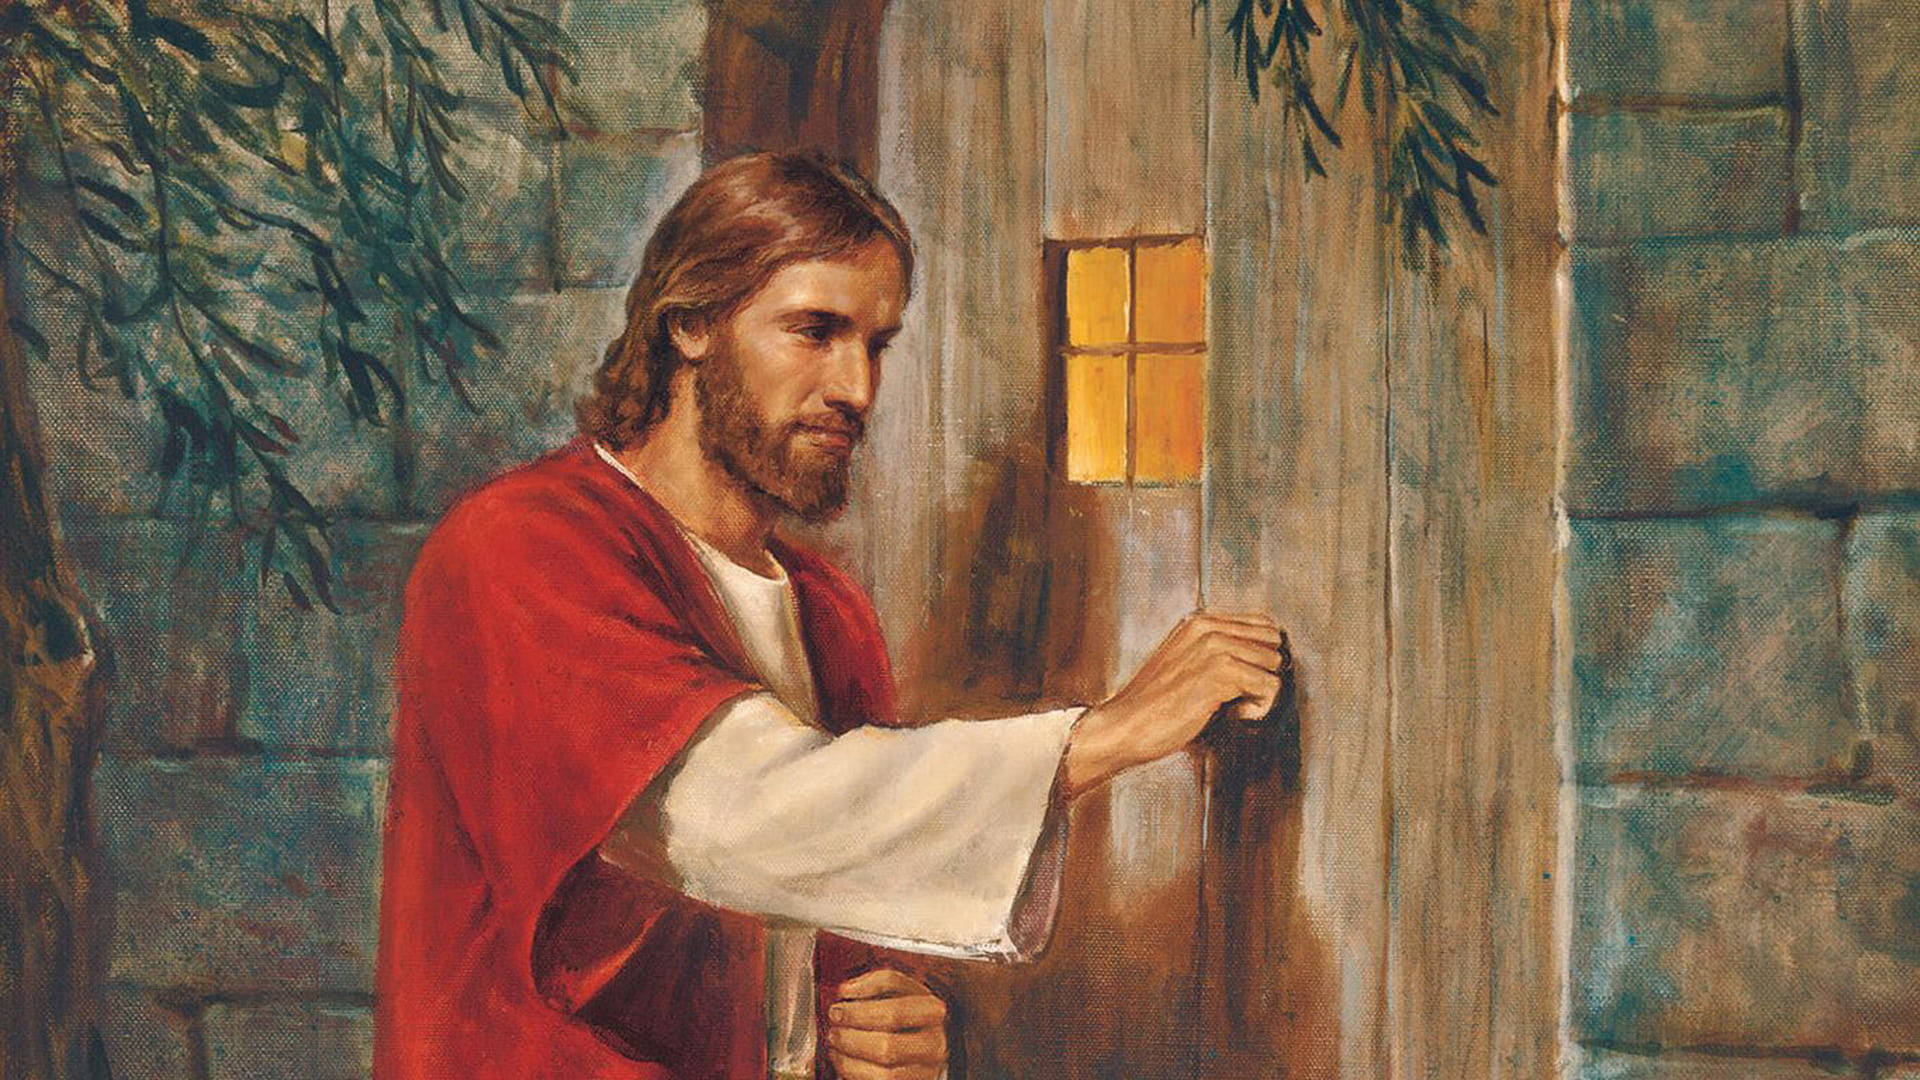 Jesusdesktop Klopfen An Der Tür Wallpaper